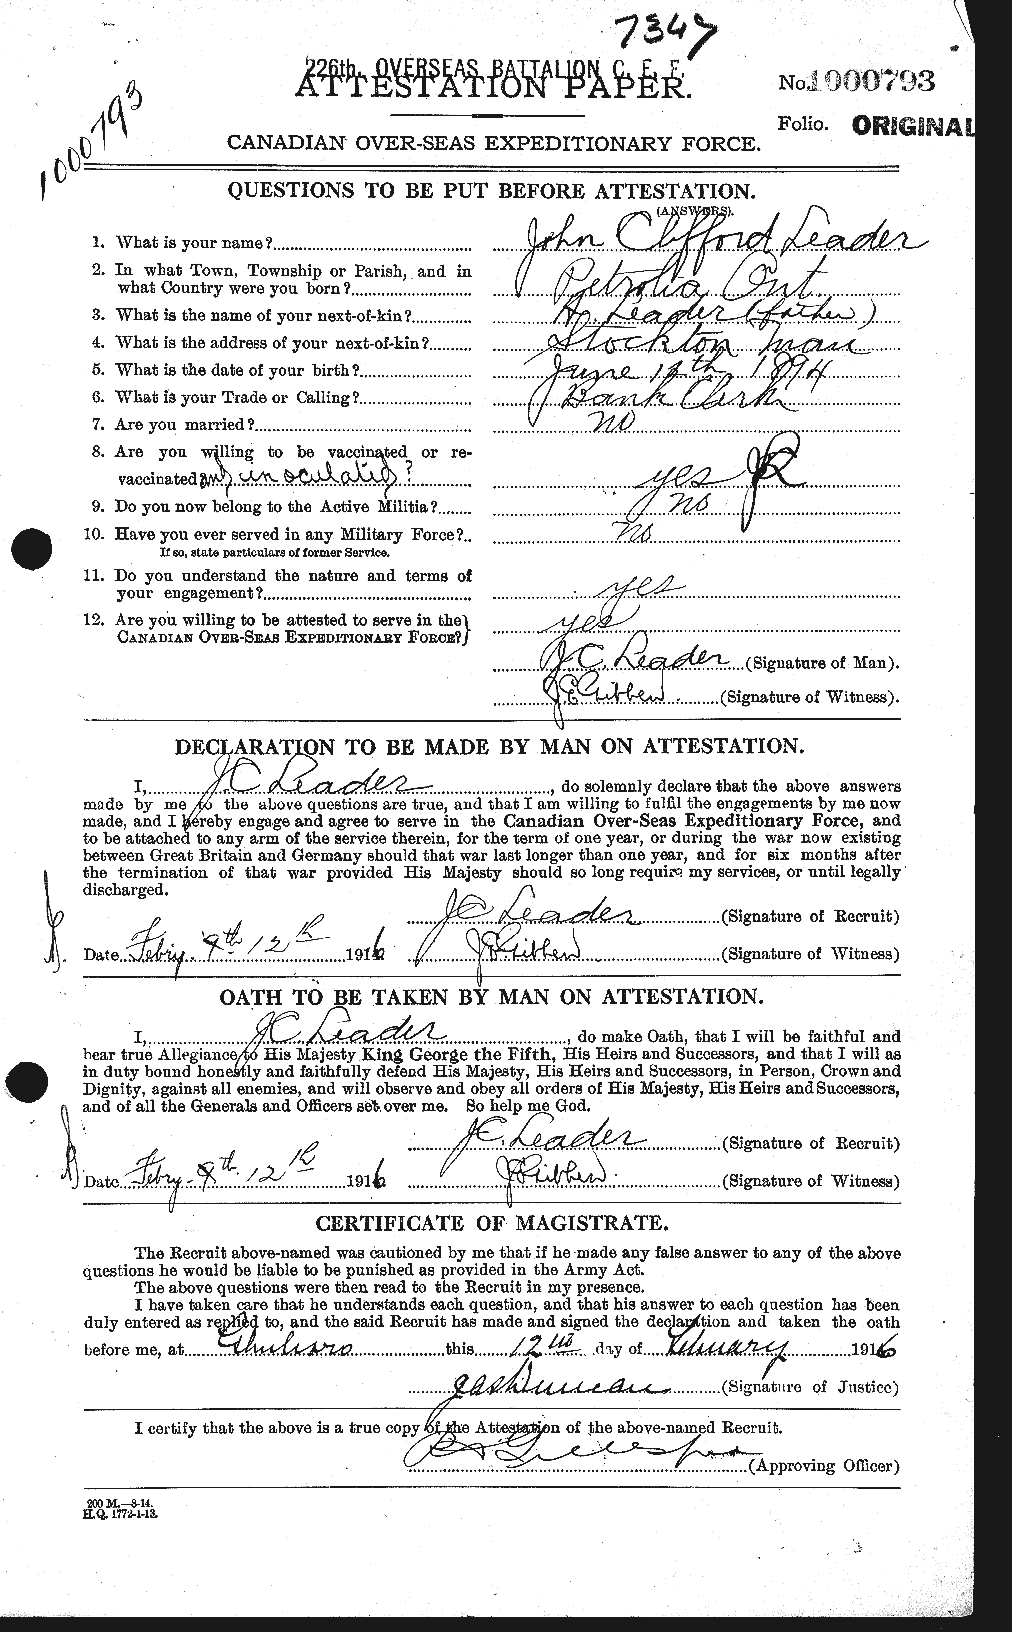 Dossiers du Personnel de la Première Guerre mondiale - CEC 455874a